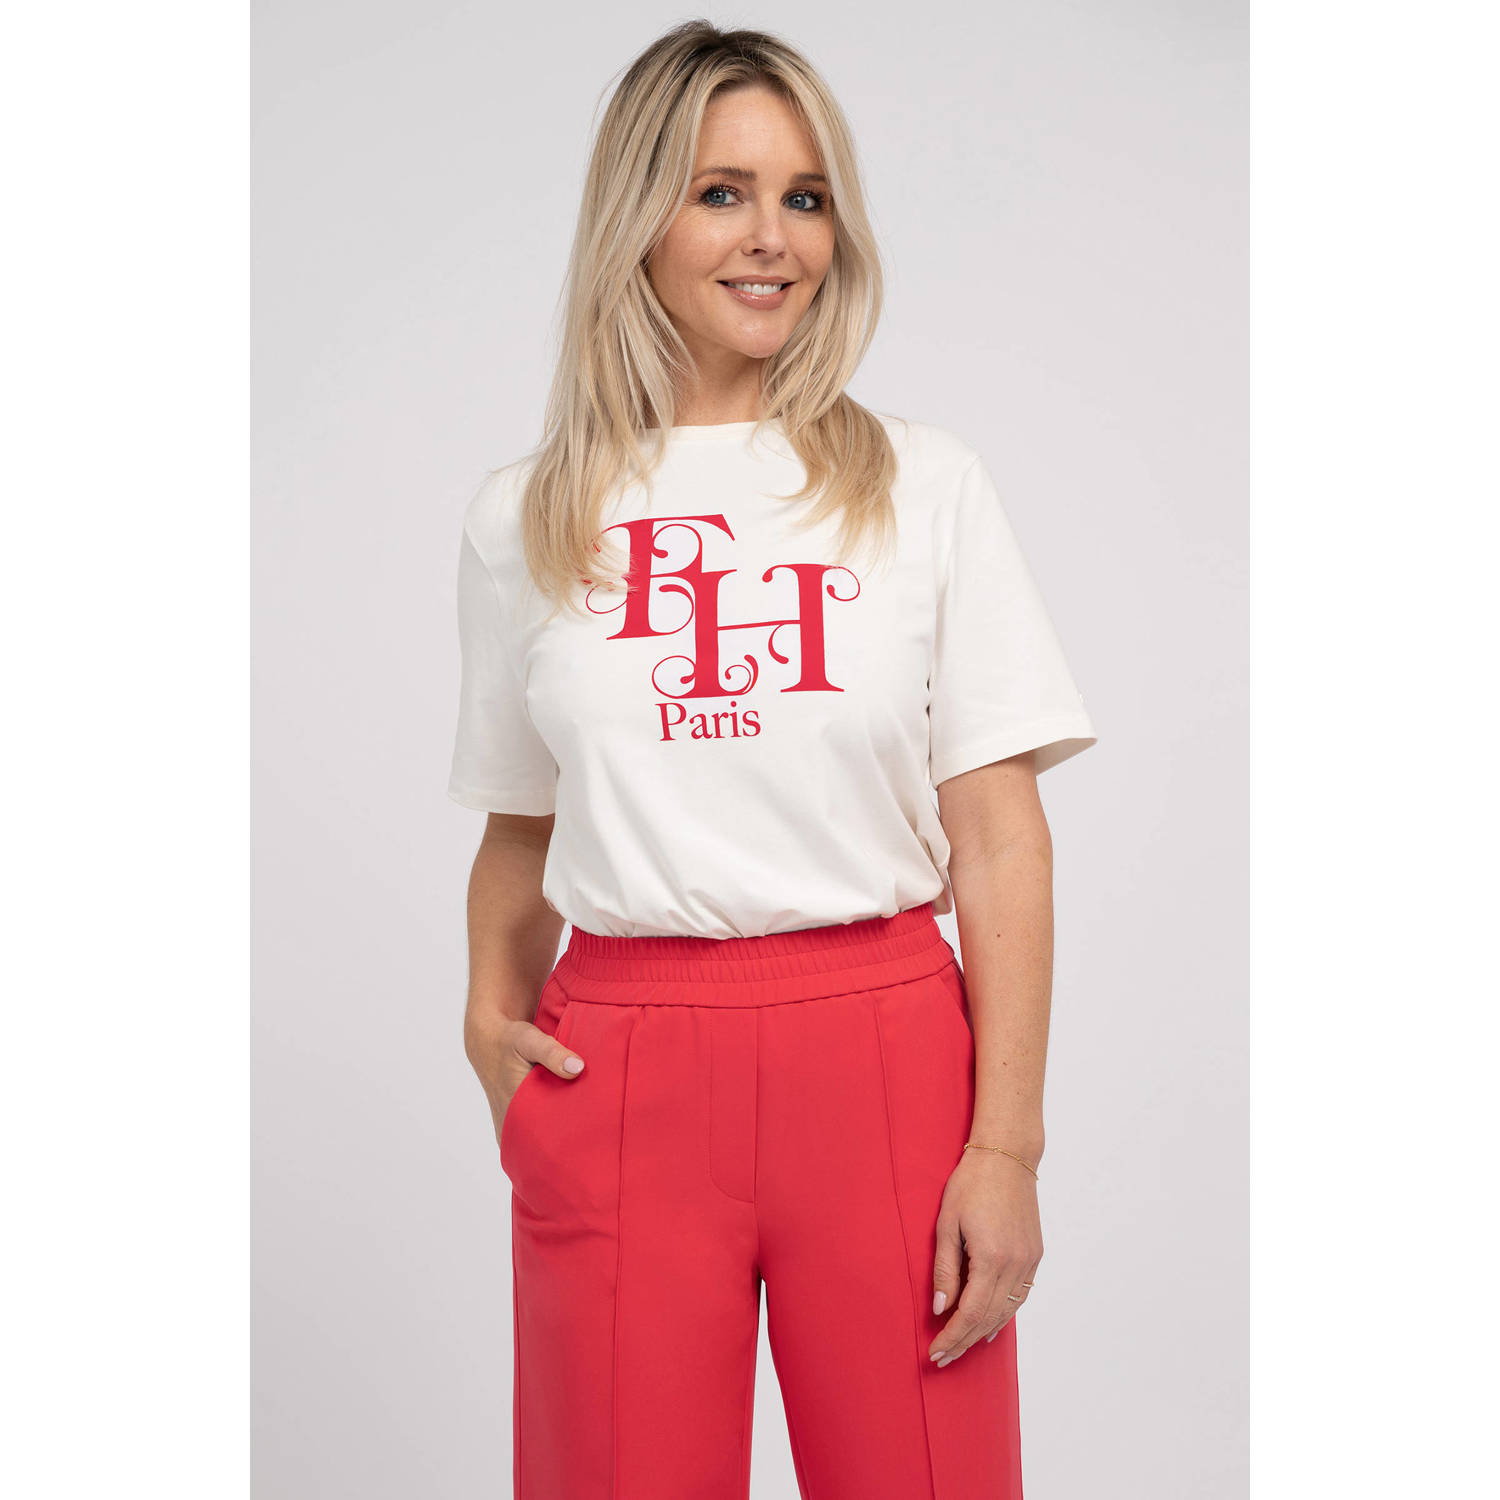 Fifth House x Chantal Janzen t-shirt Arvine met printopdruk ecru rood